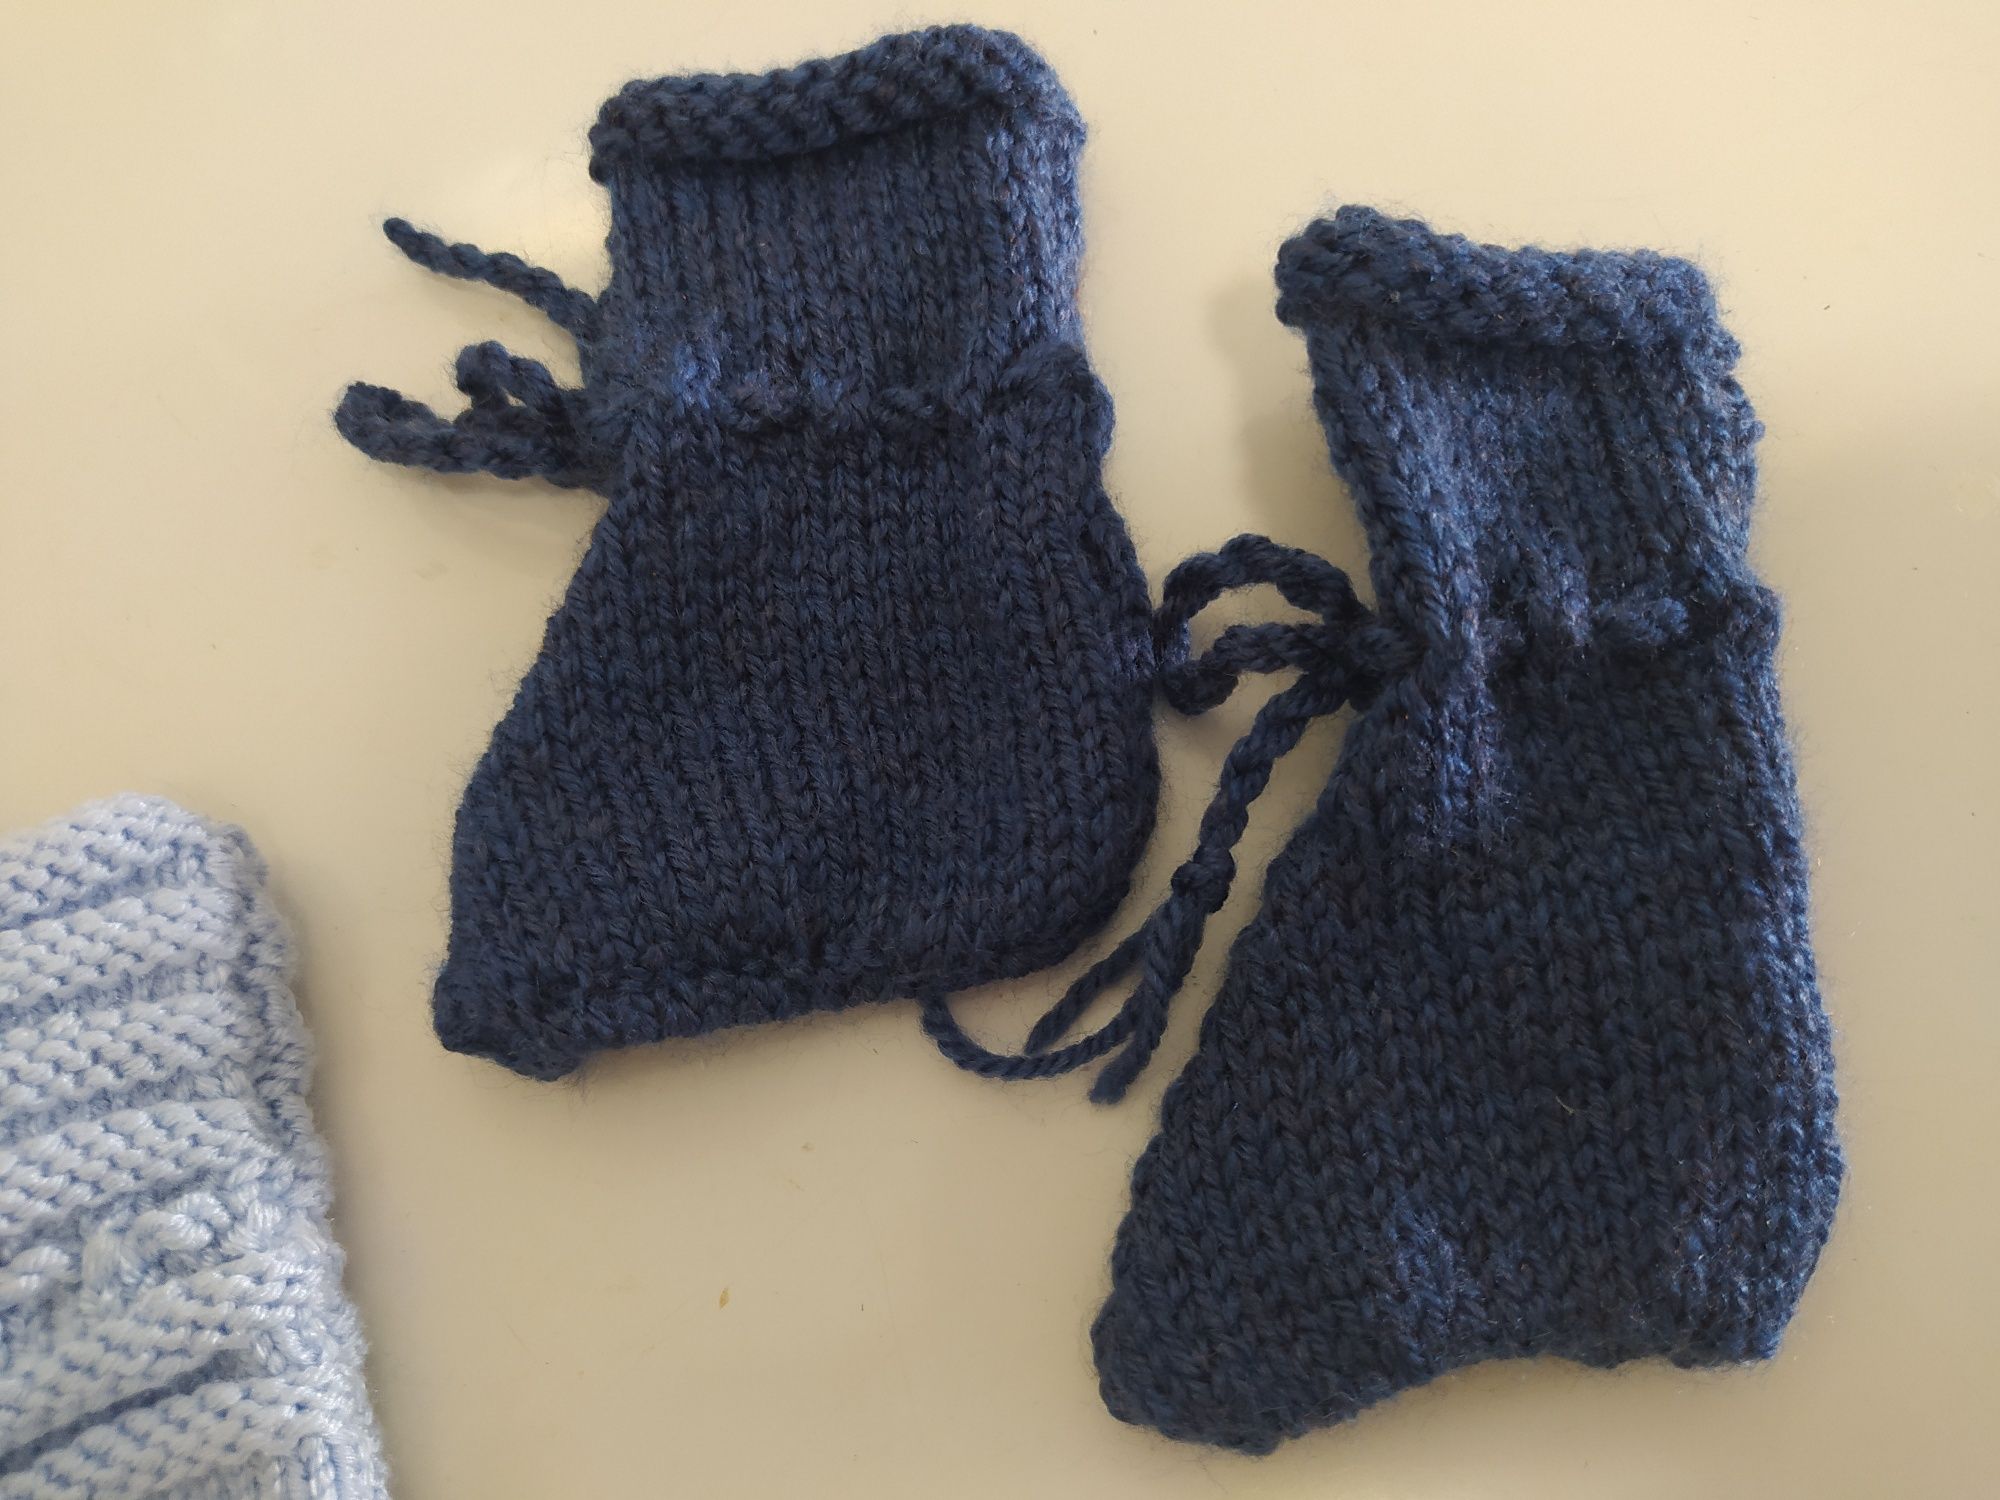 Conjunto de botinhas em tricot 0-3 meses